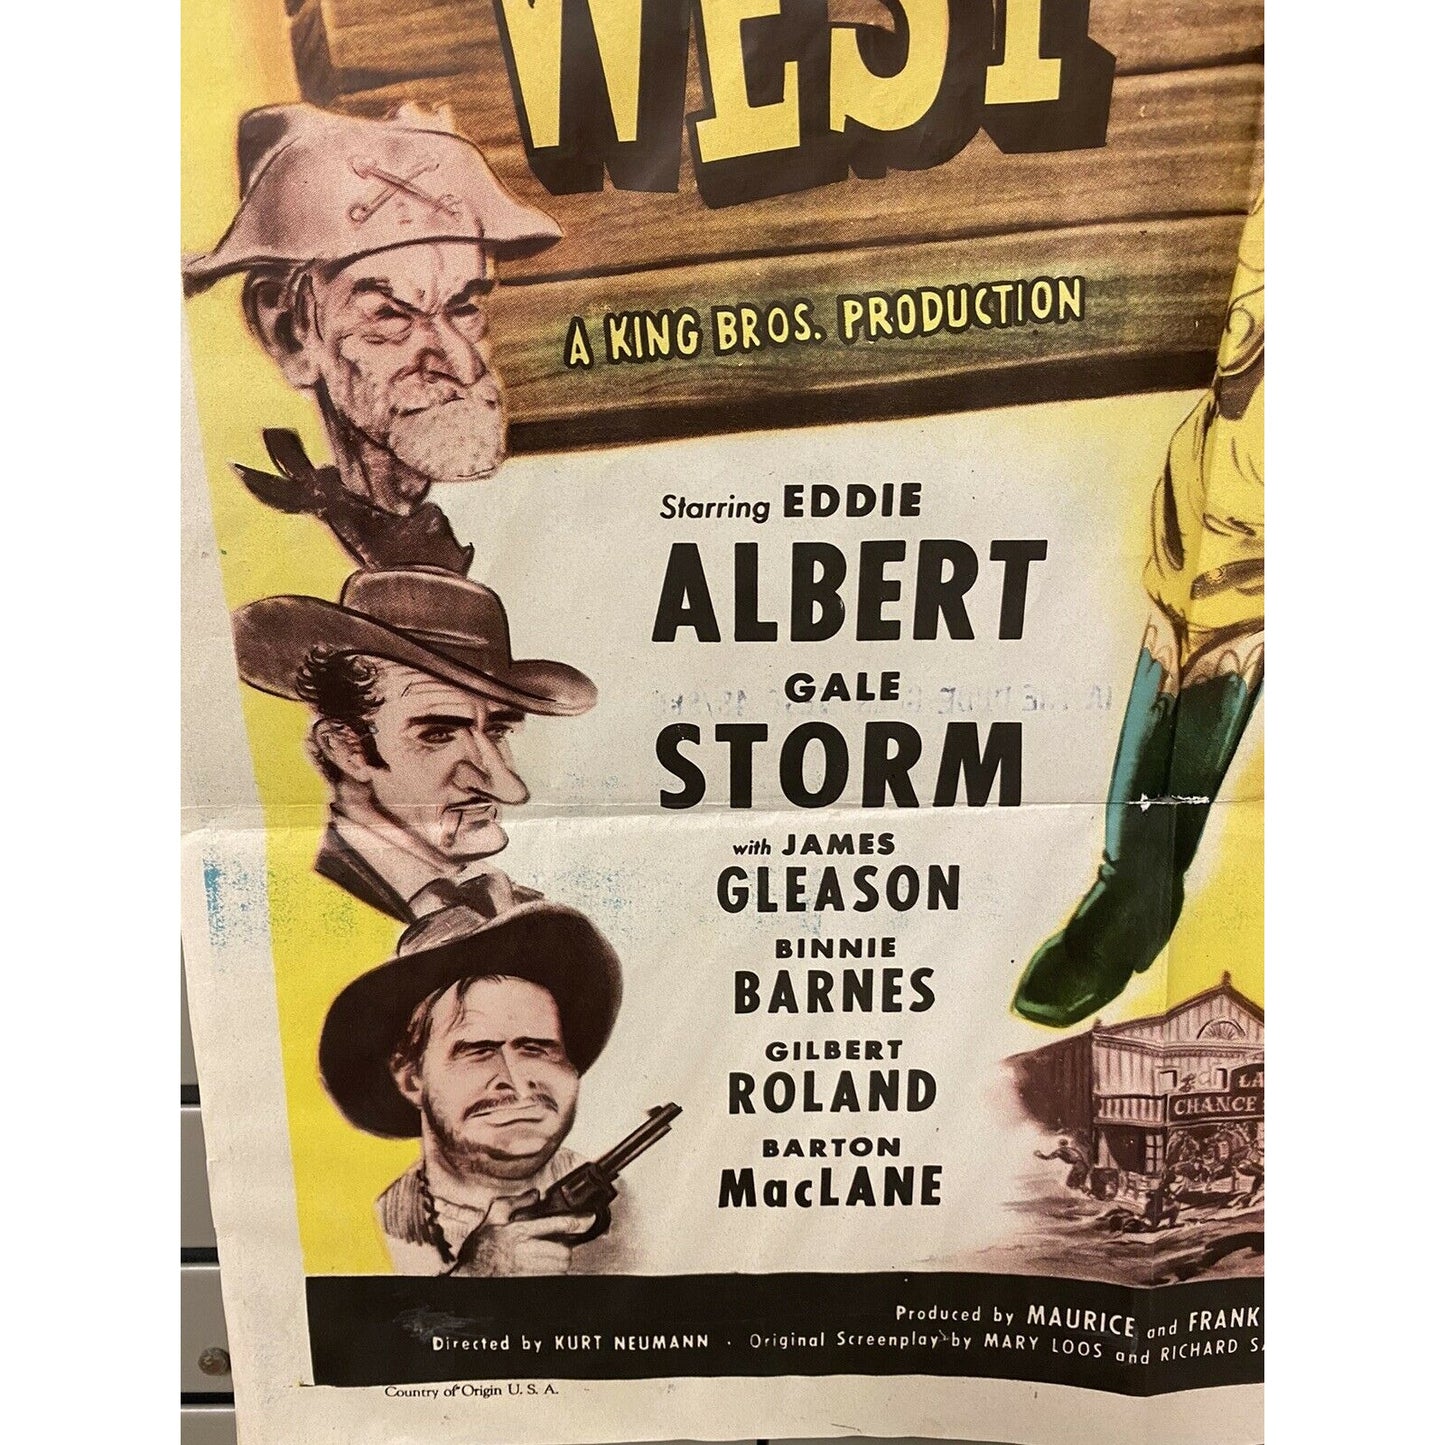 The Dude Goes West ORIGINAL 1948 Movie Poster 1 Sheet Eddie Albert Gale Storm